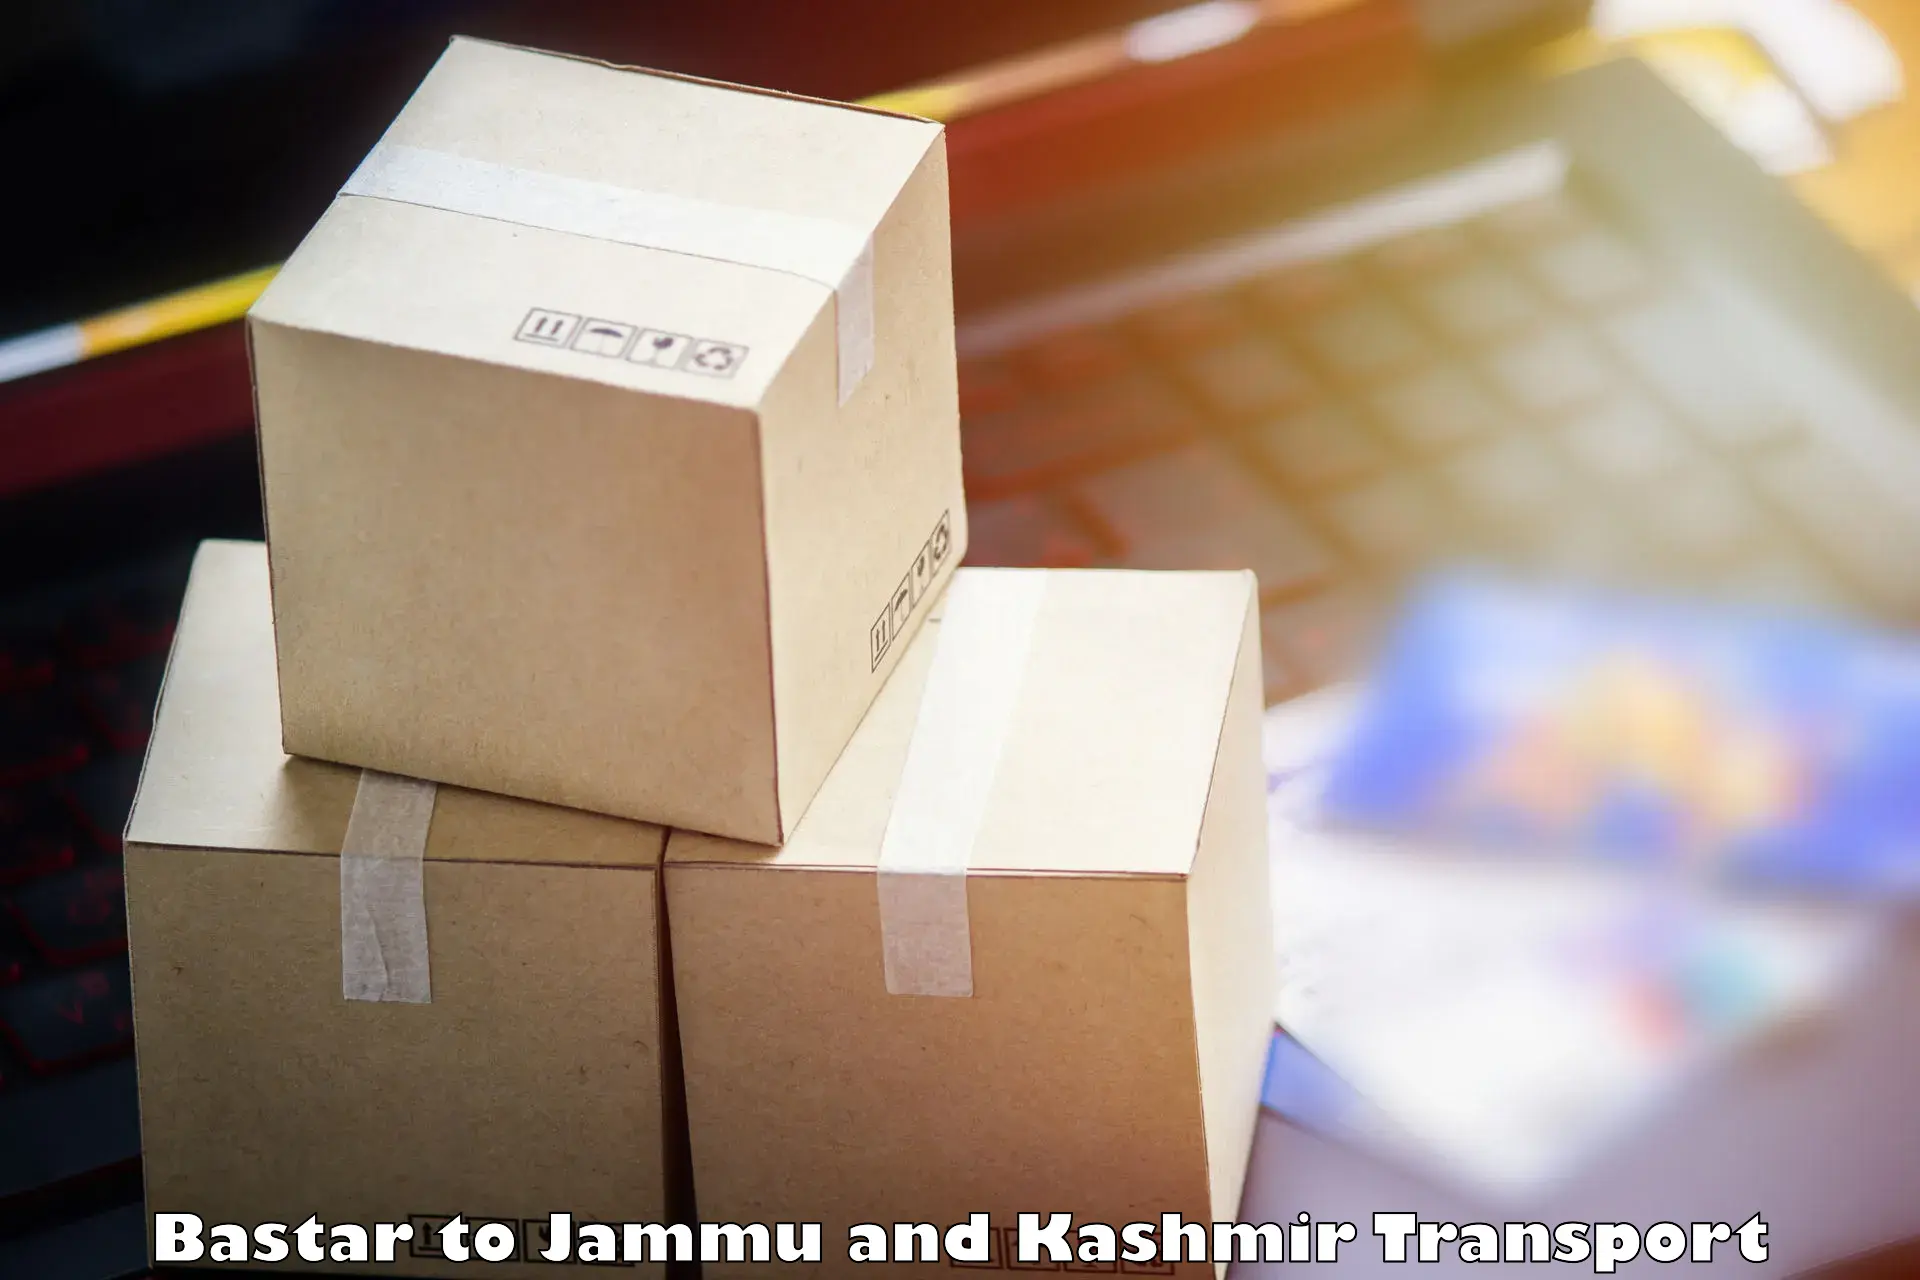 Air cargo transport services Bastar to Kishtwar